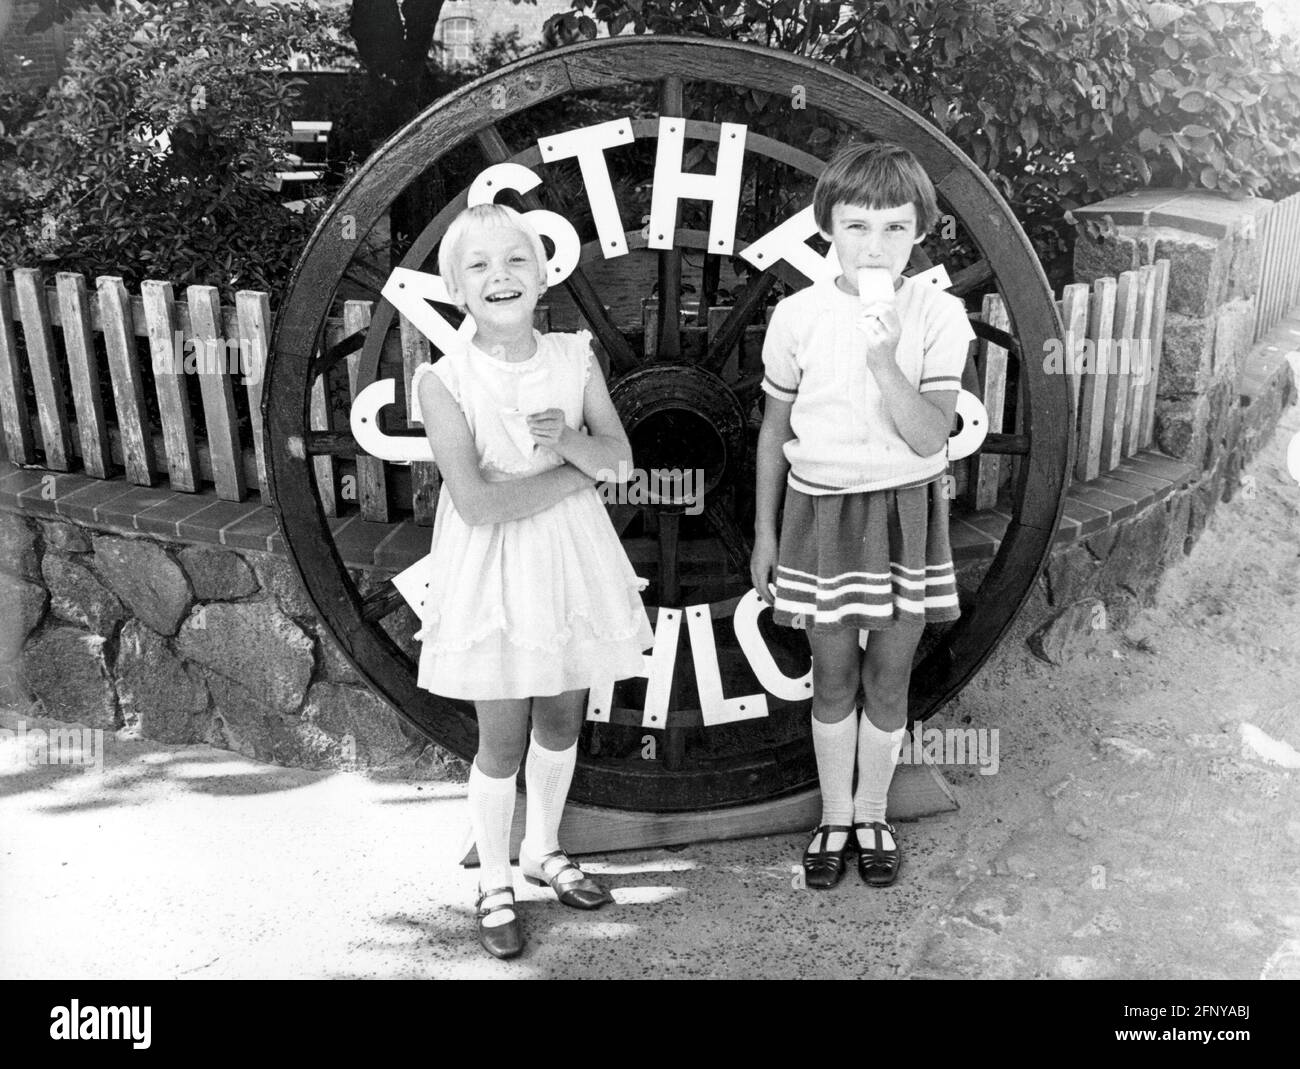 Persone, bambini, mangiare, due ragazze con le lecche ghiacciate, Germania, anni 60, DIRITTI AGGIUNTIVI-CLEARANCE-INFO-NON-DISPONIBILE Foto Stock